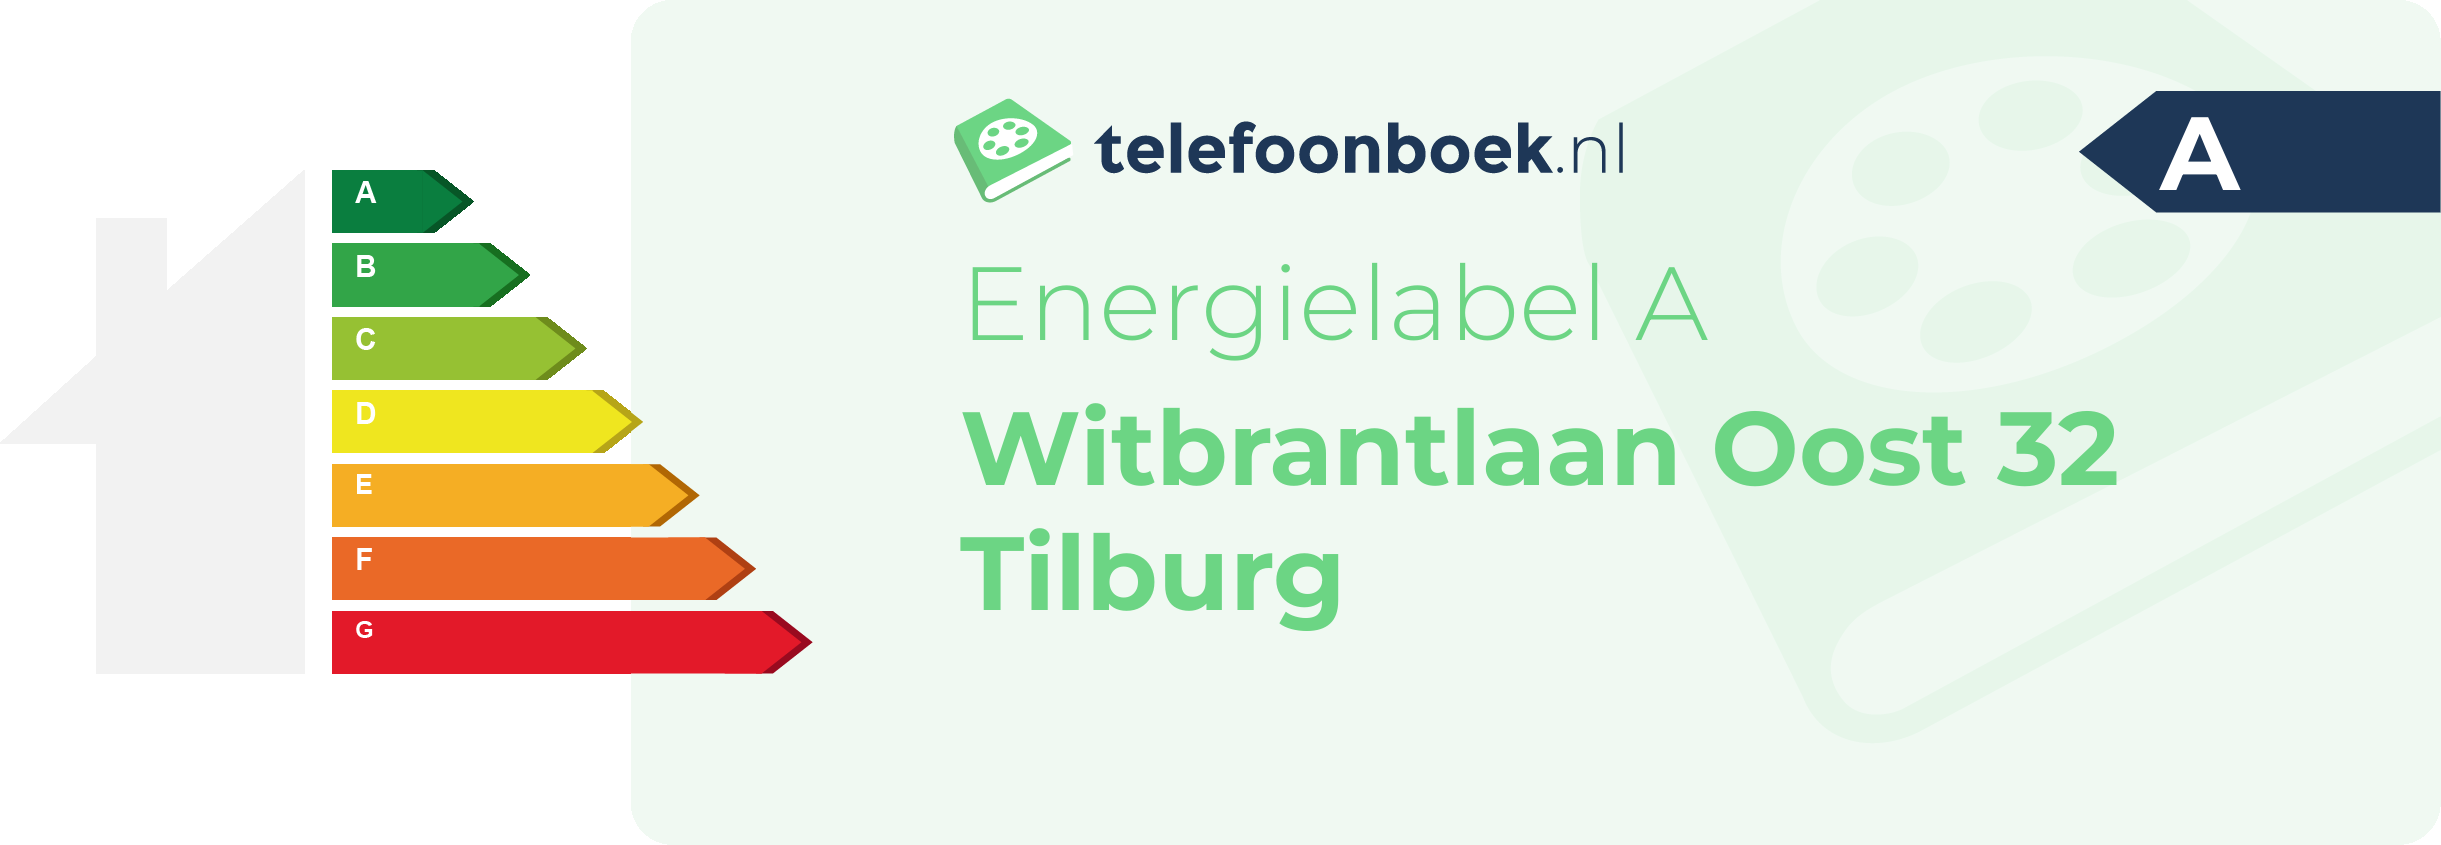 Energielabel Witbrantlaan Oost 32 Tilburg